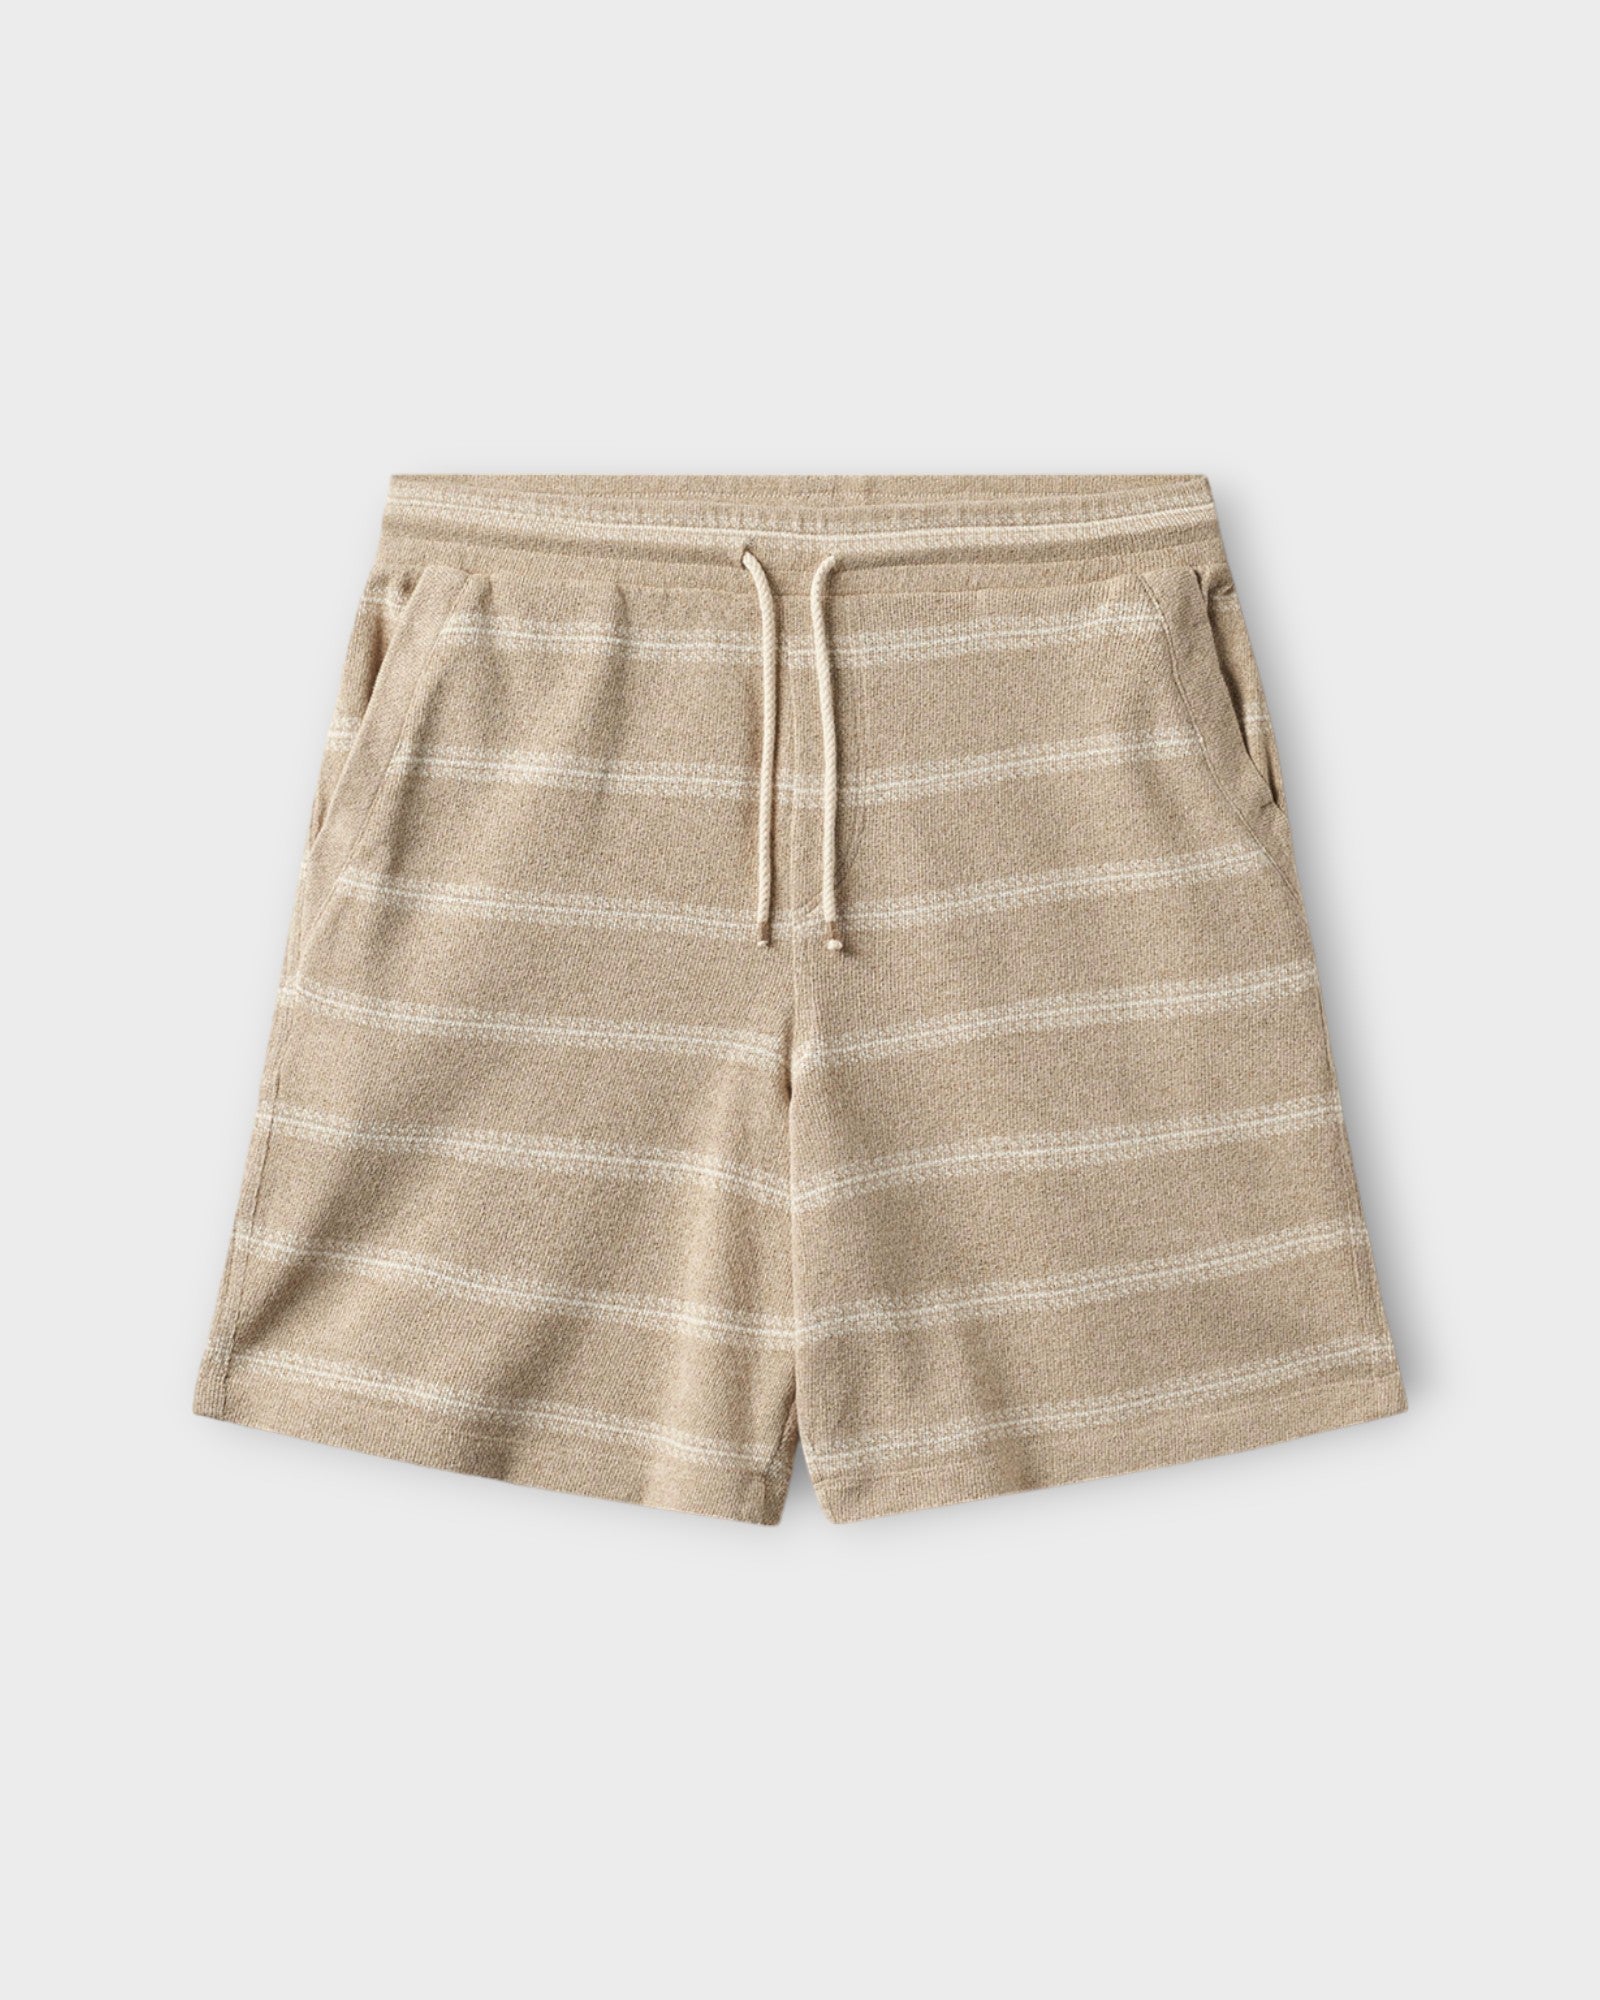 Fede Win Shorts Safari fra Gabba. Sandfarvet shorts med elastik i livet til mænd. Her set forfra.